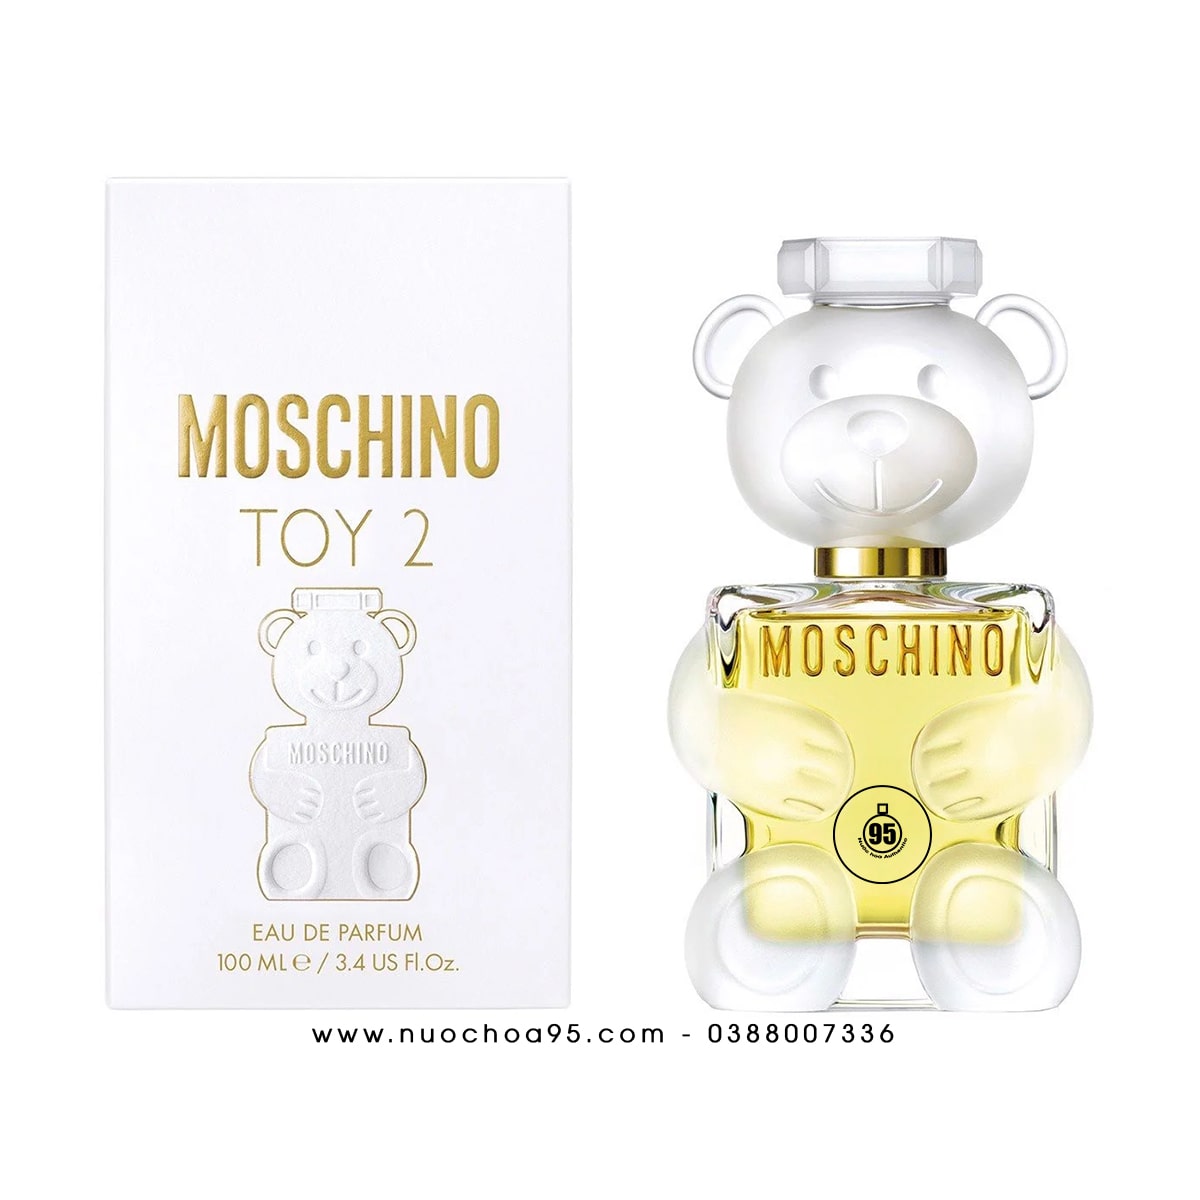 Nước hoa Moschino Toy 2 